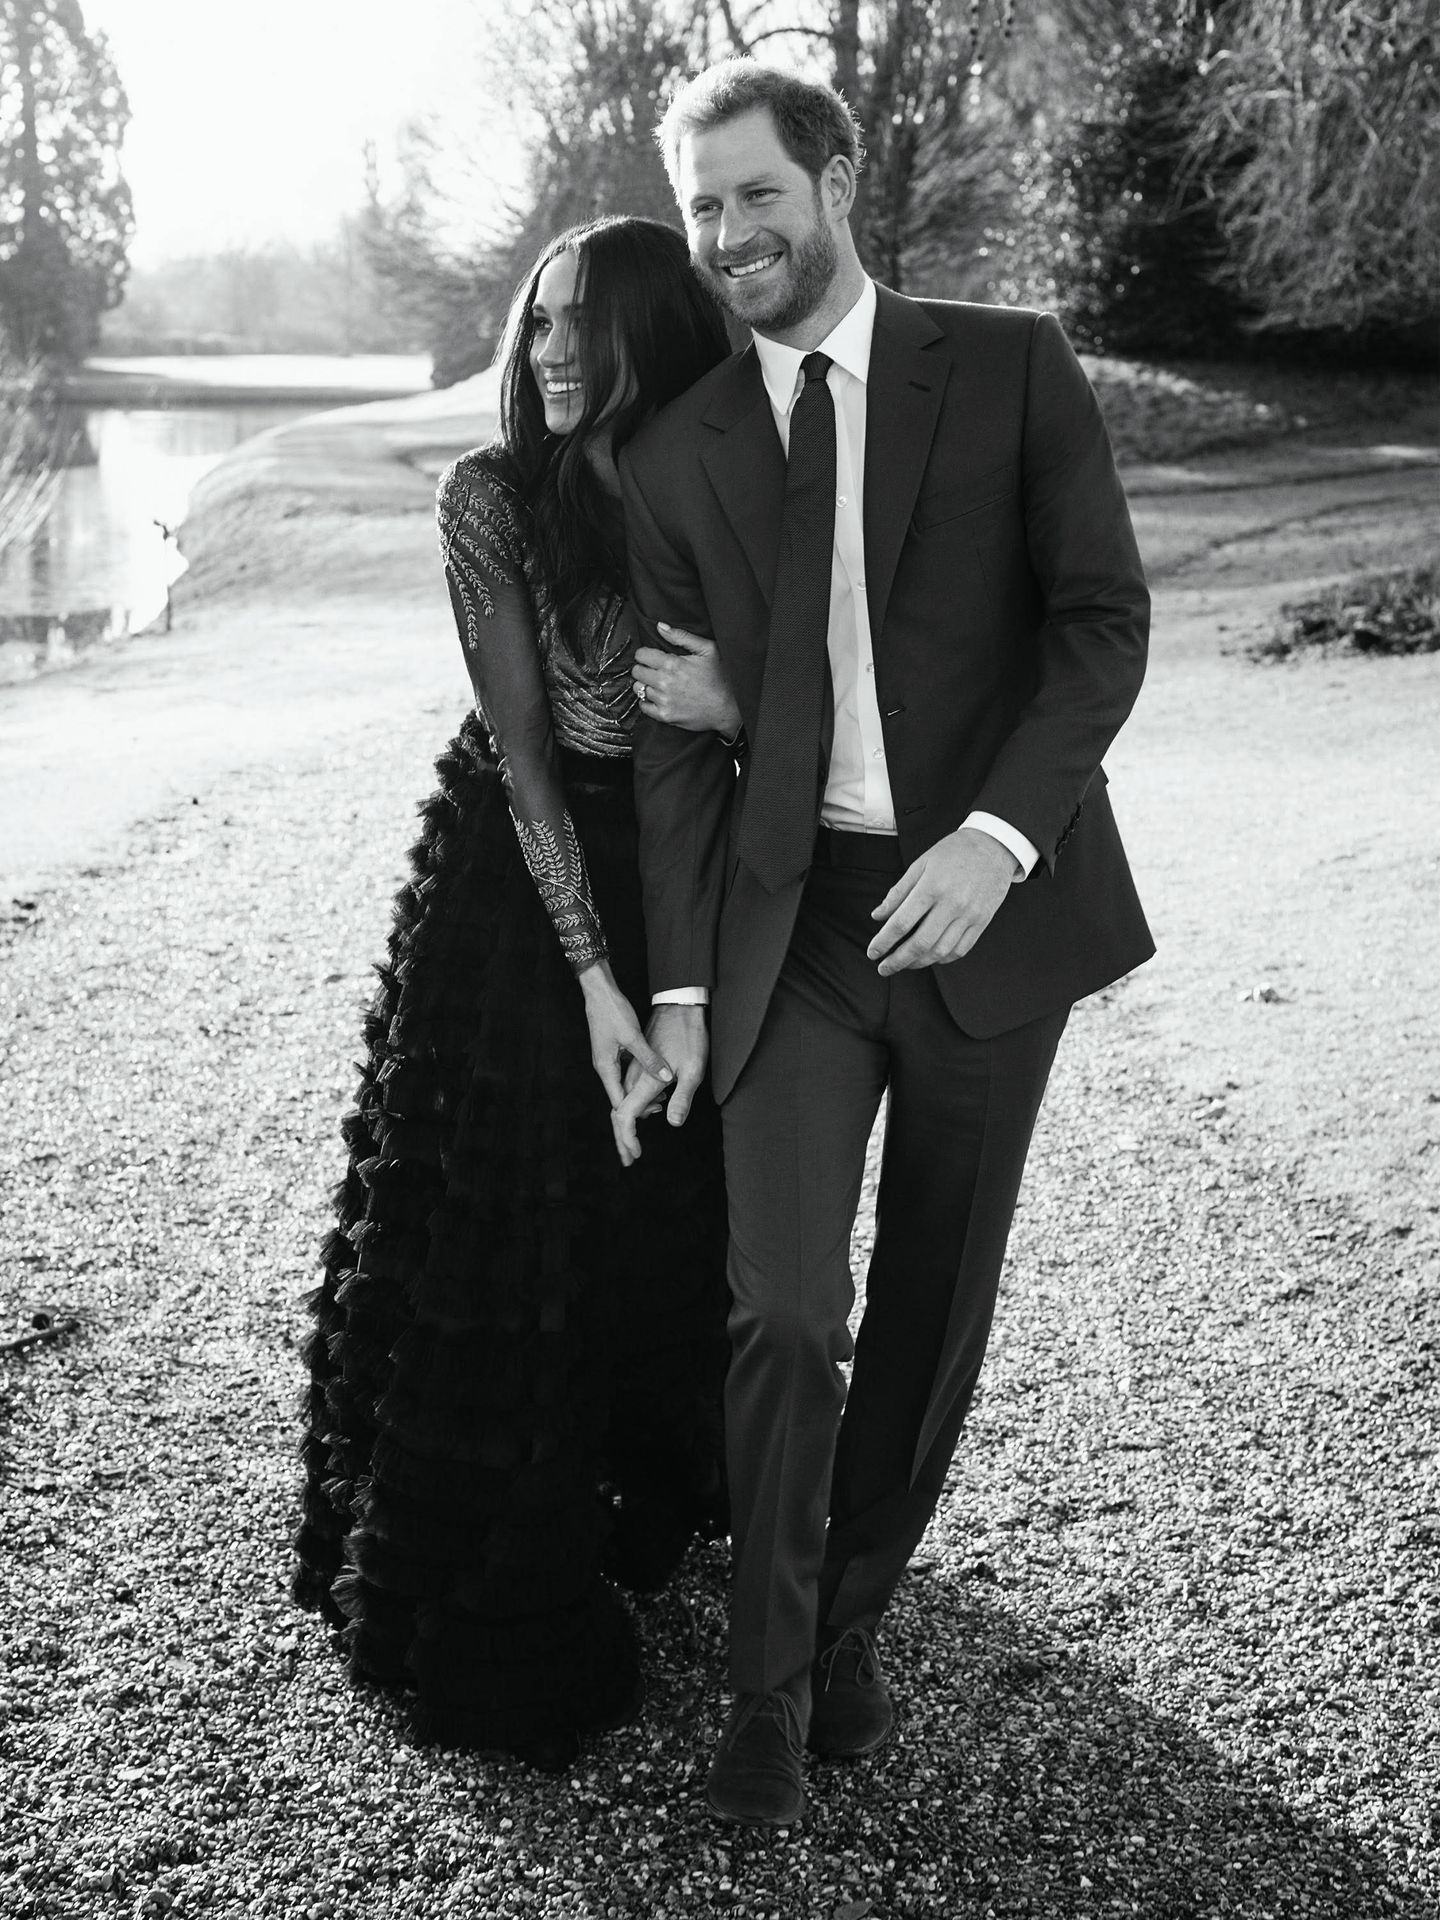 Imagen del compromiso del príncipe Harry y Meghan Markle. (Gtresonline)